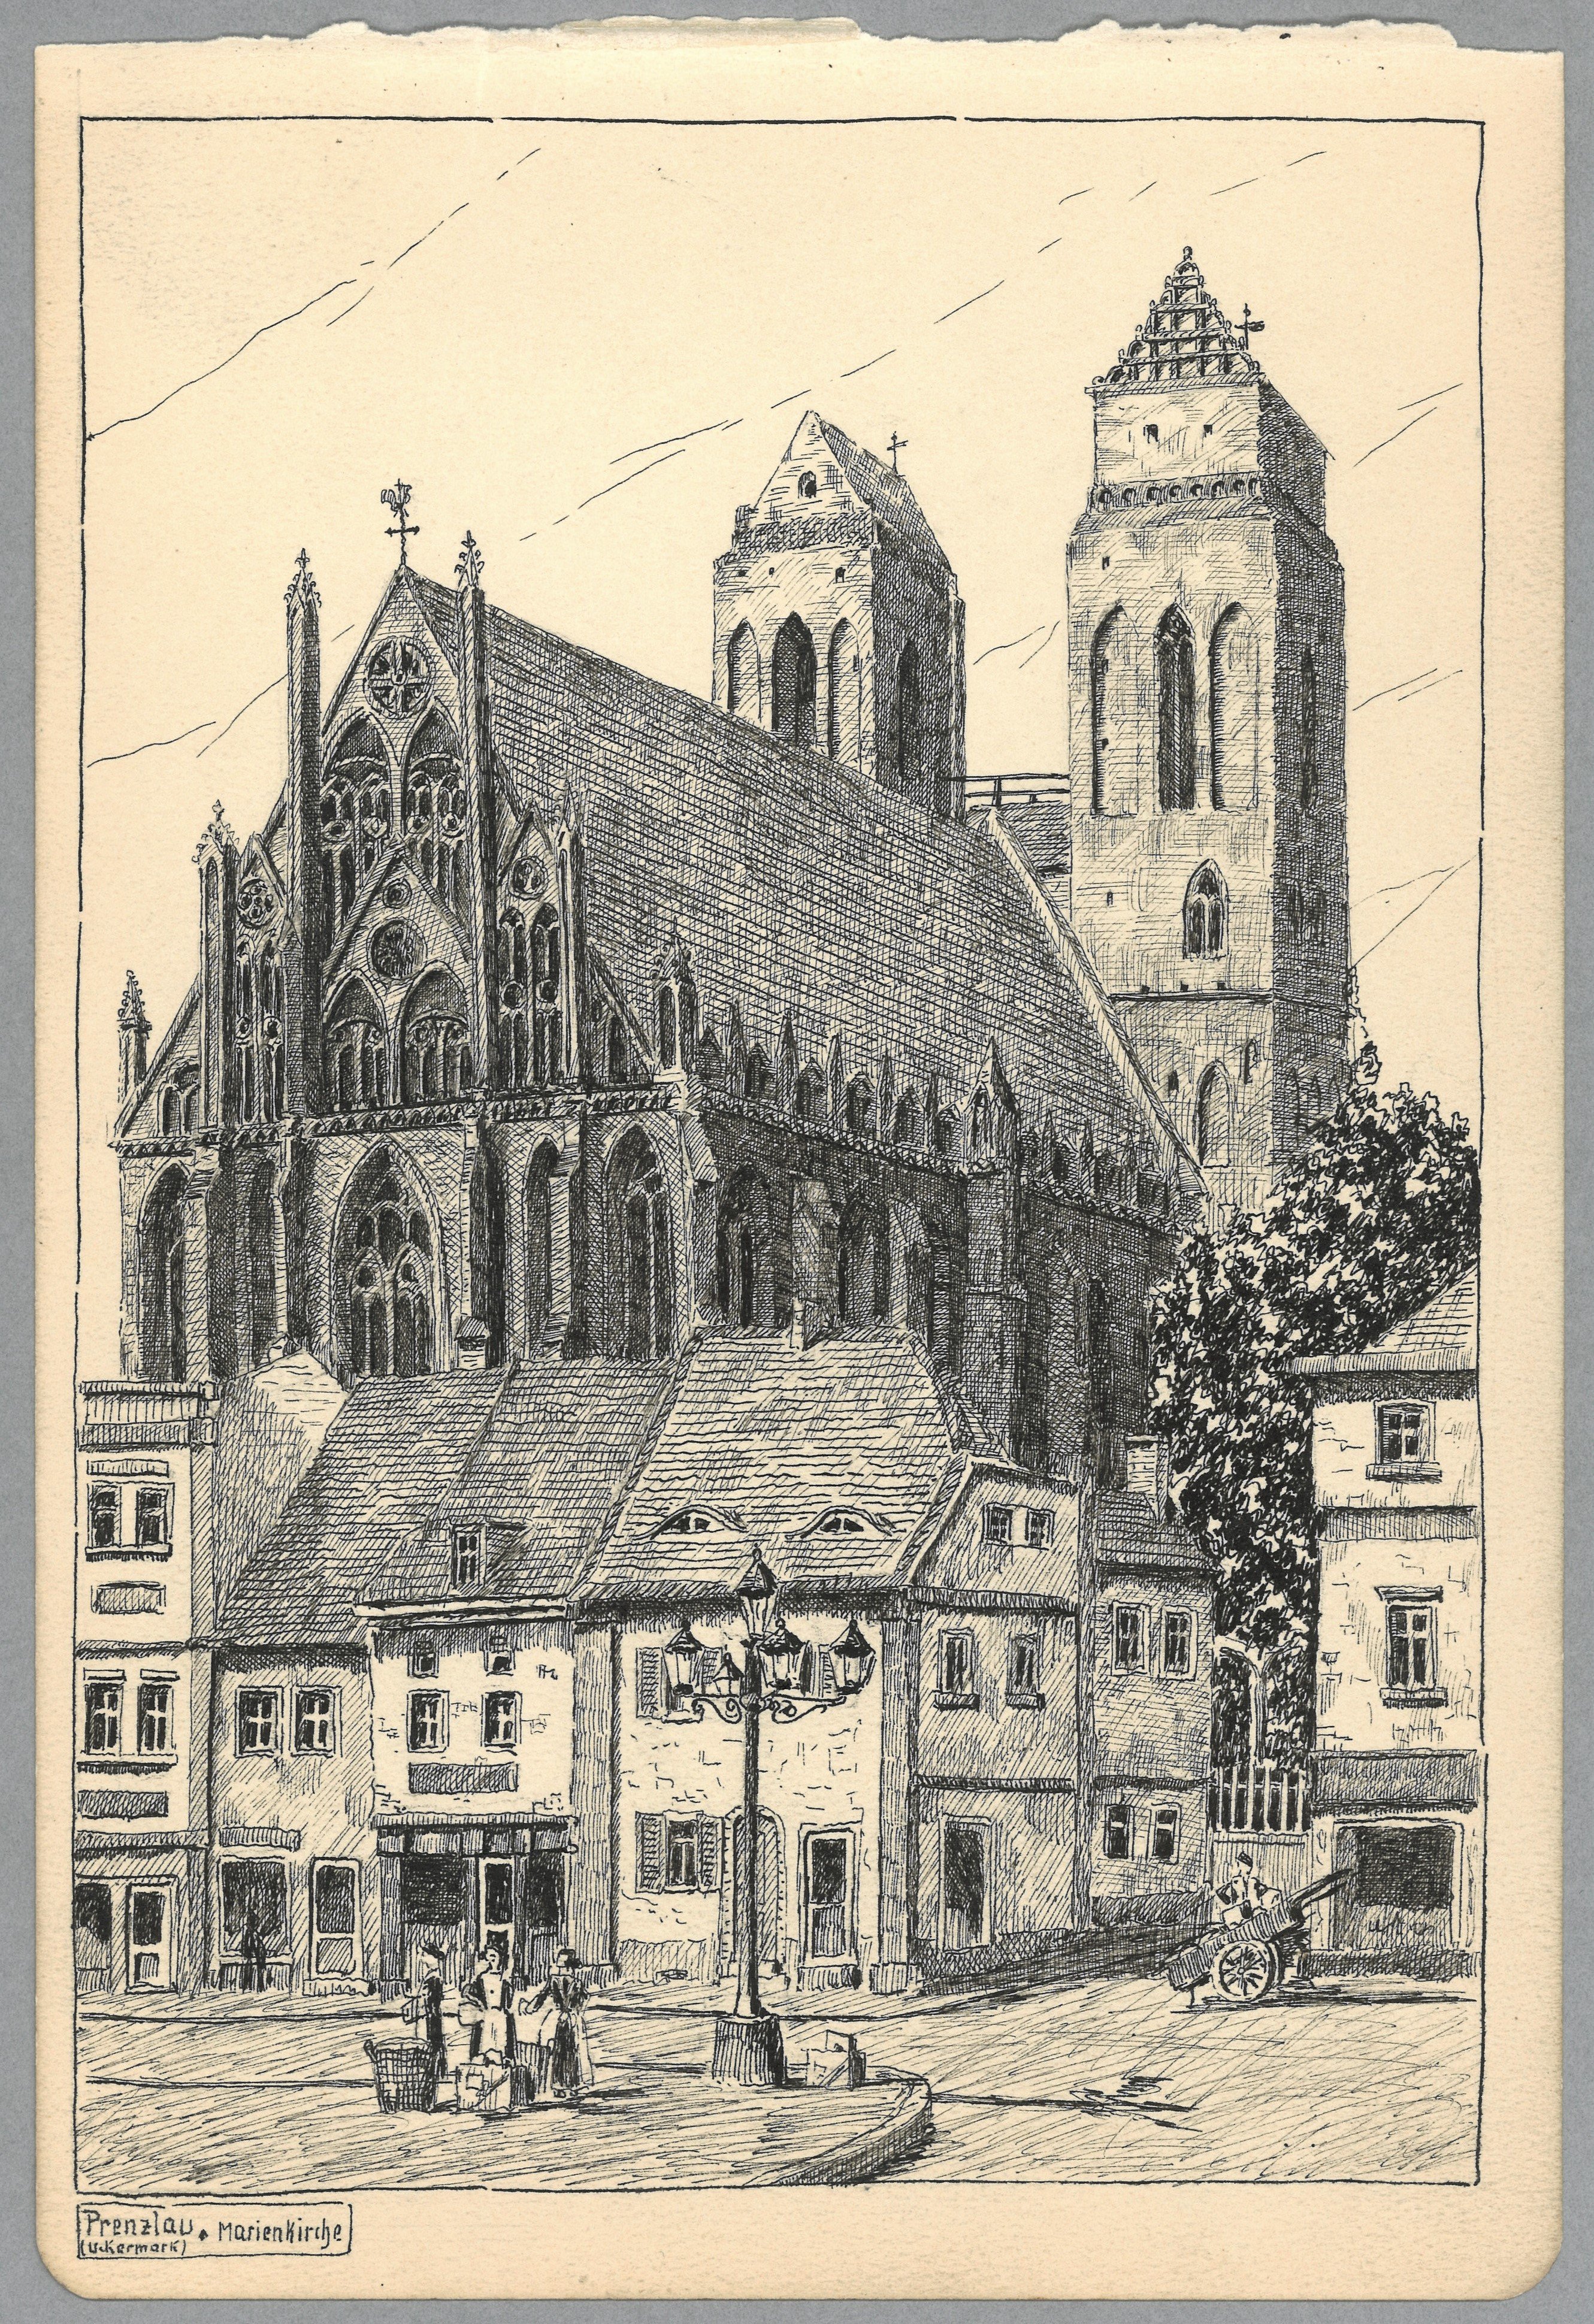 Prenzlau: Marienkirche von Nordosten (Landesgeschichtliche Vereinigung für die Mark Brandenburg e.V., Archiv CC BY)